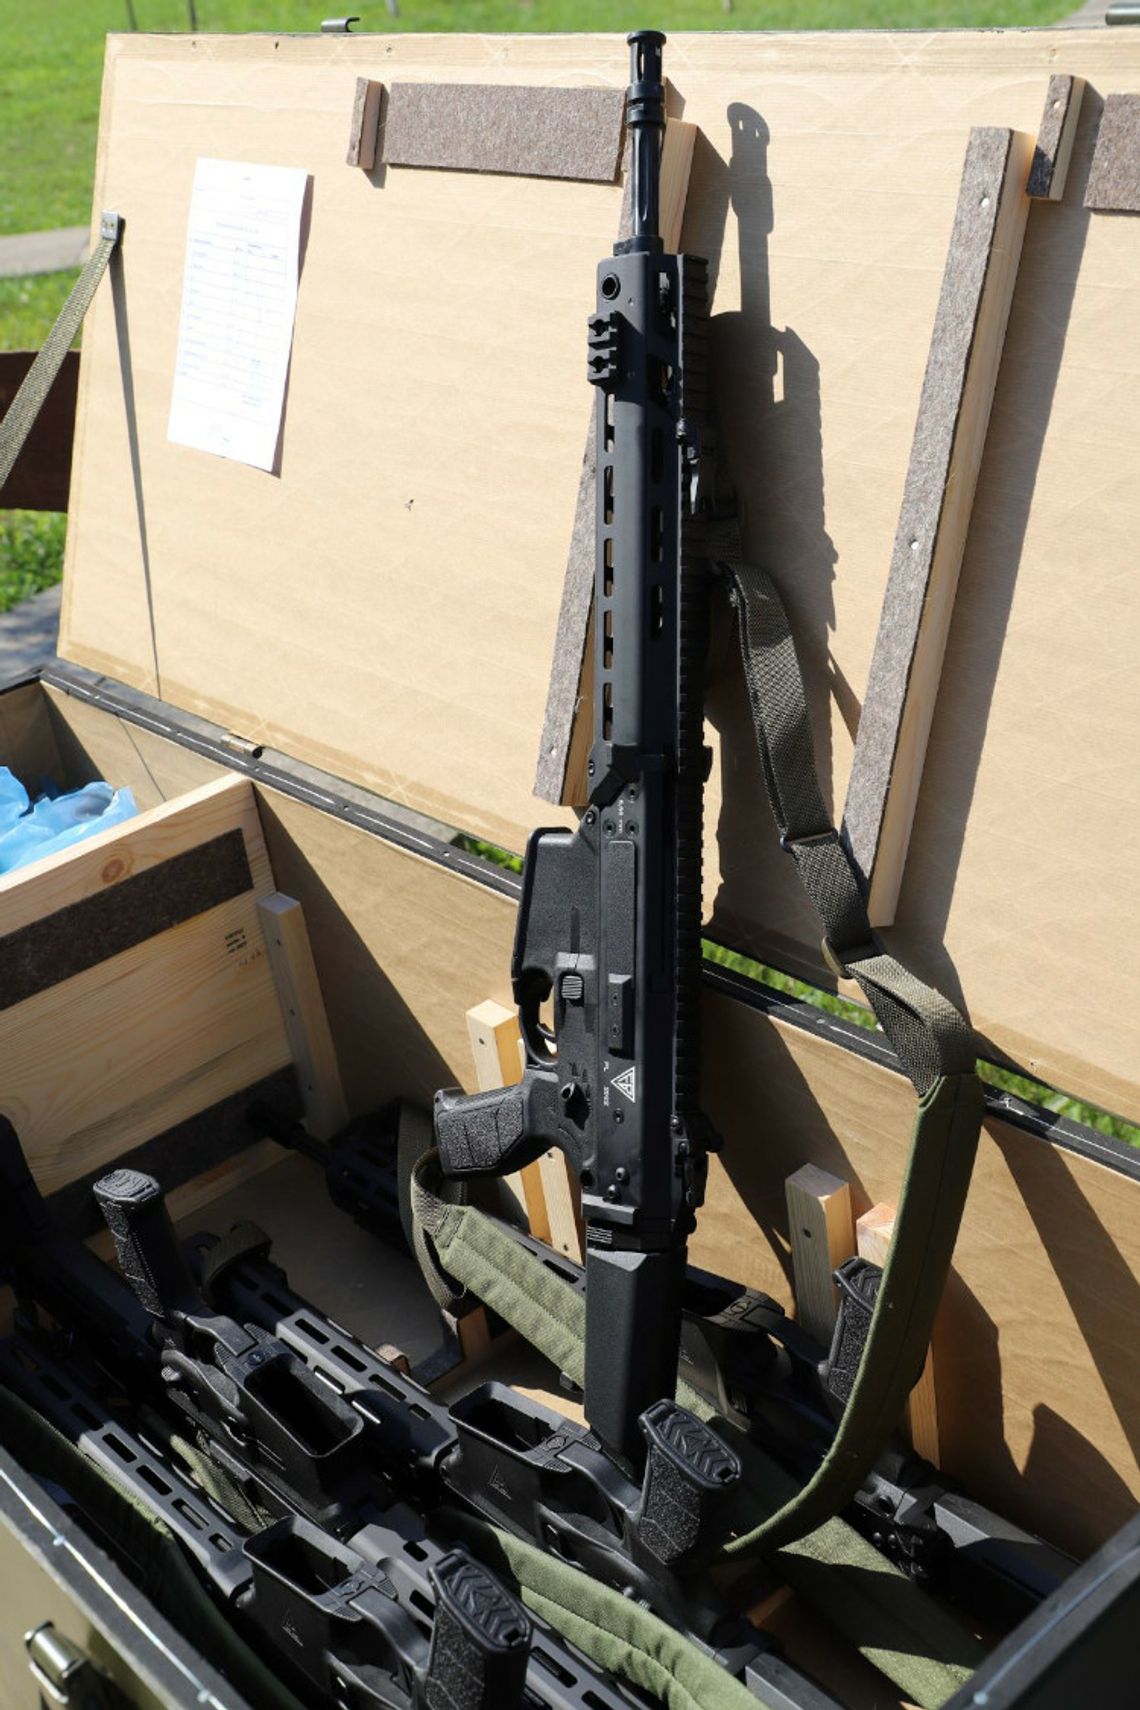 Nowe wyposażenie w postaci broni dla malborskiego batalionu terytorialsów